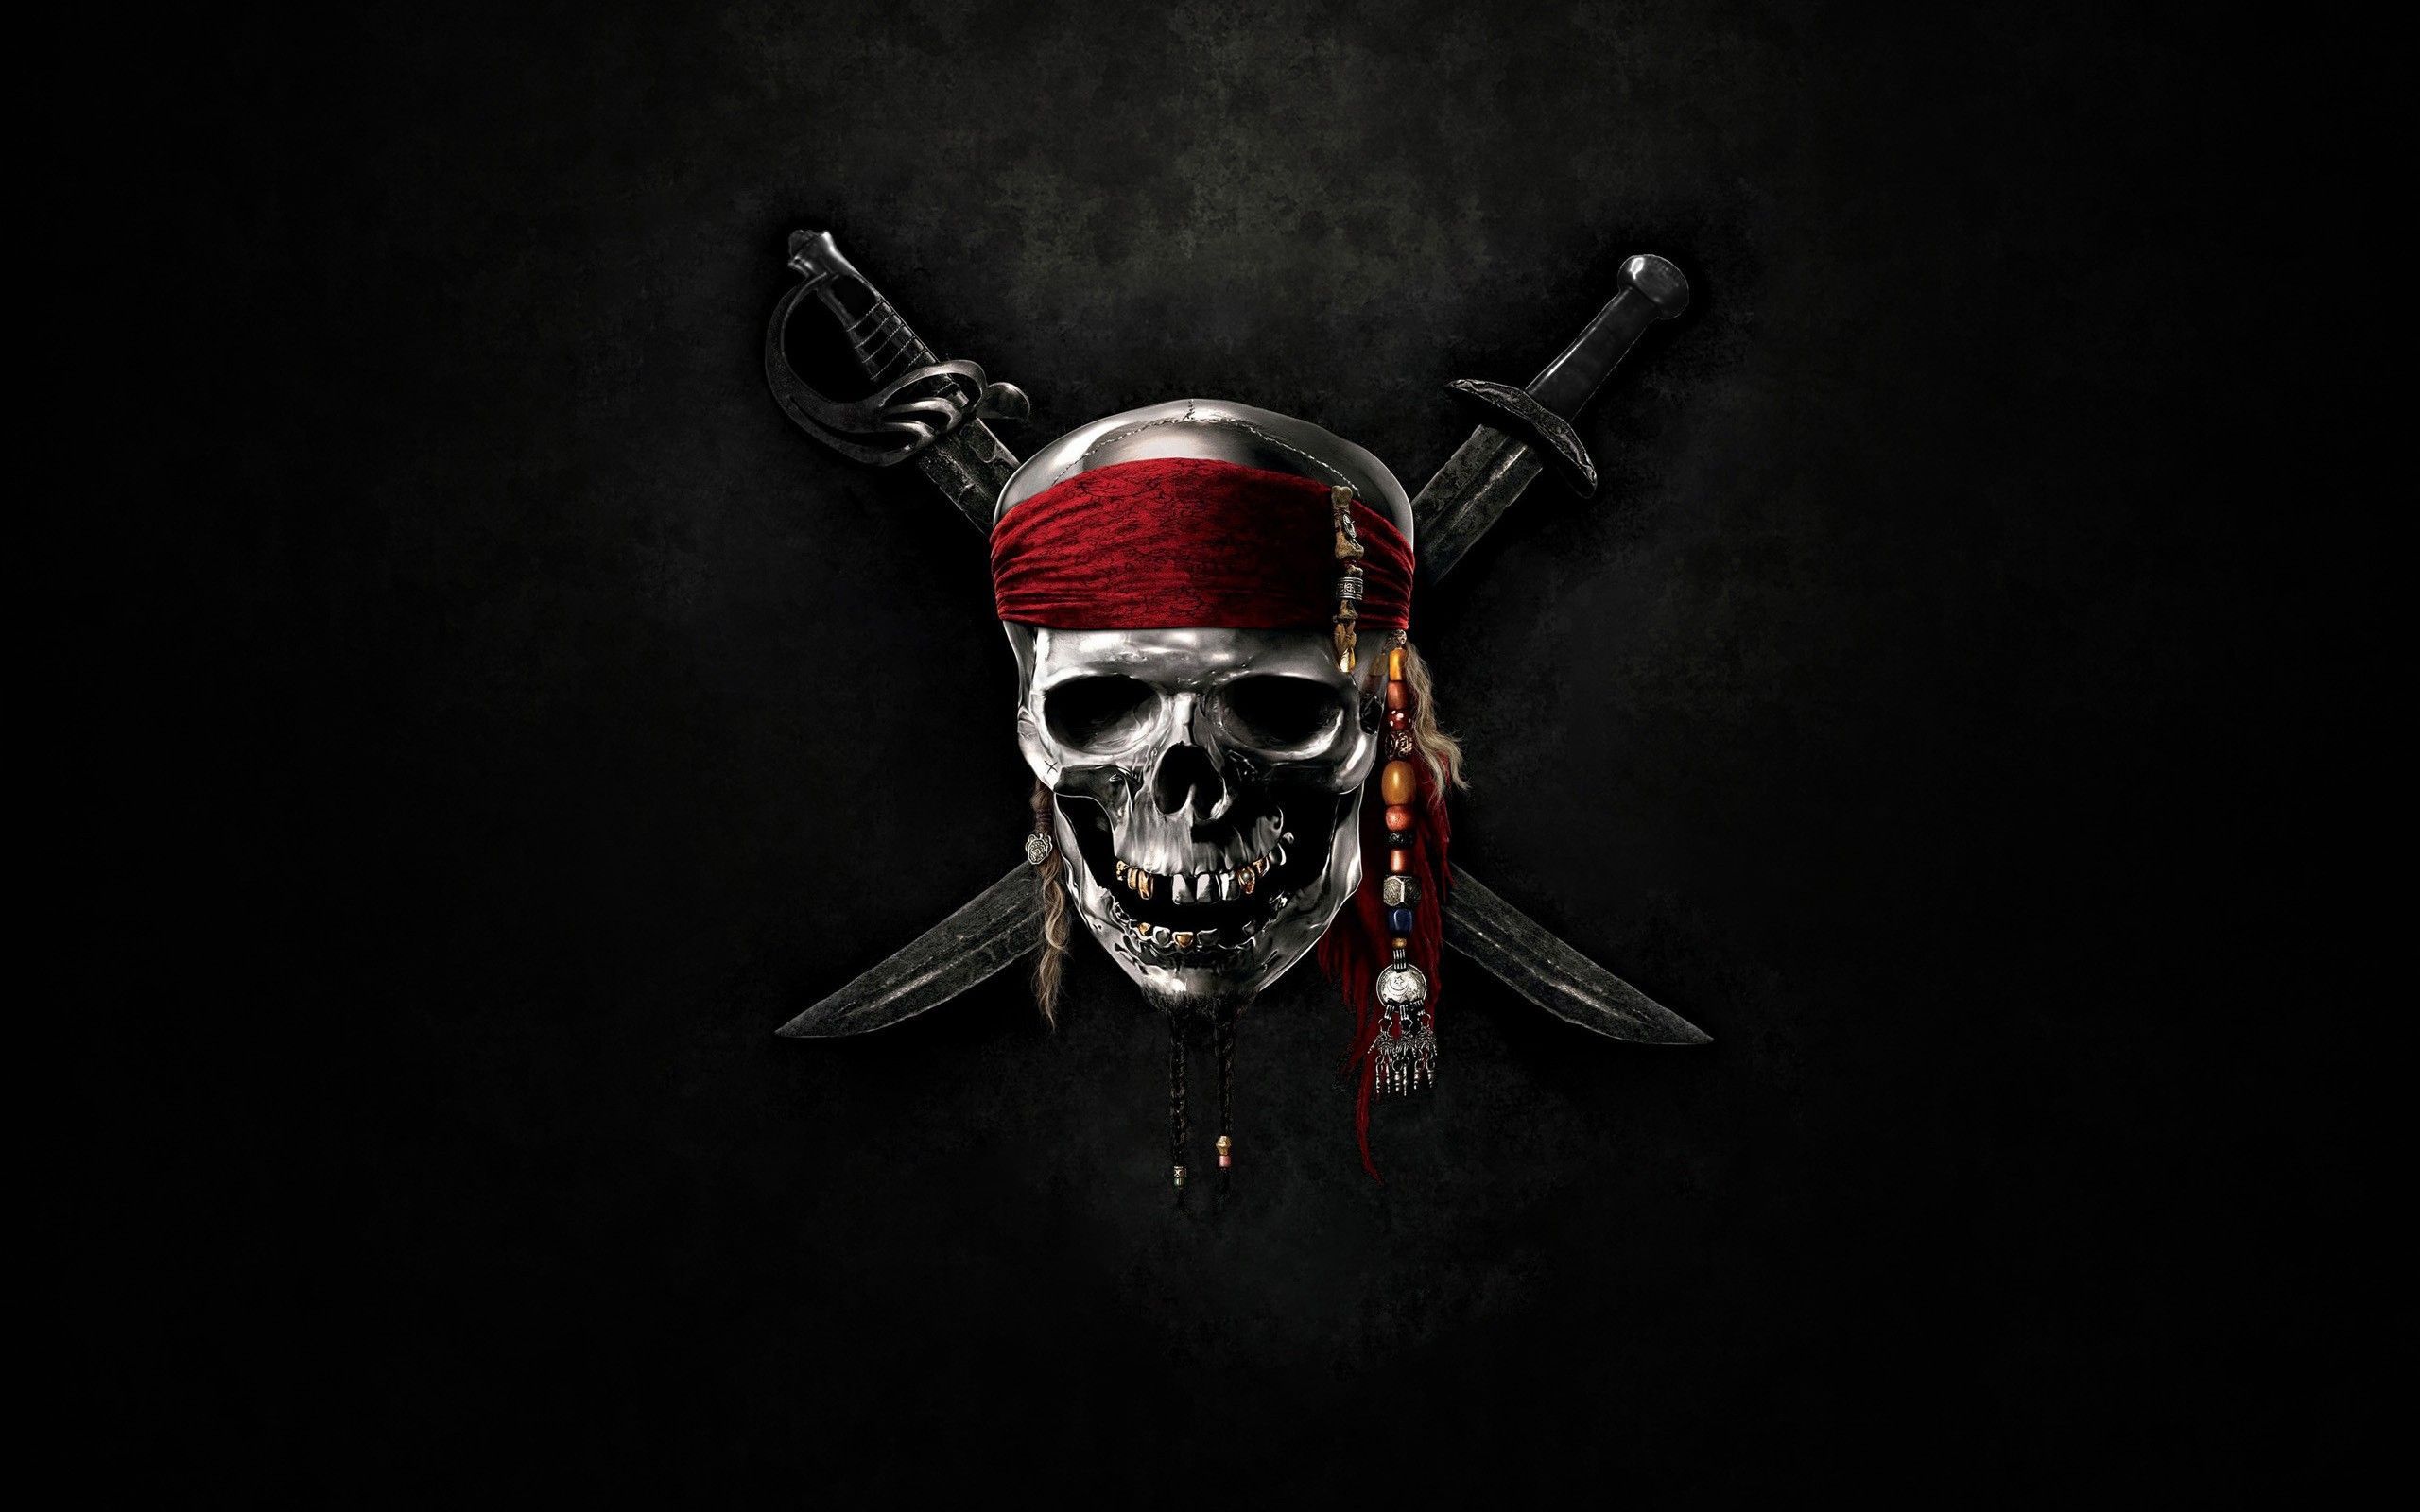 Skulls Pirates Of The Caribbean Swords. Wallpaper Bod. Skull wallpaper, Pirates of the caribbean, HD skull wallpaper